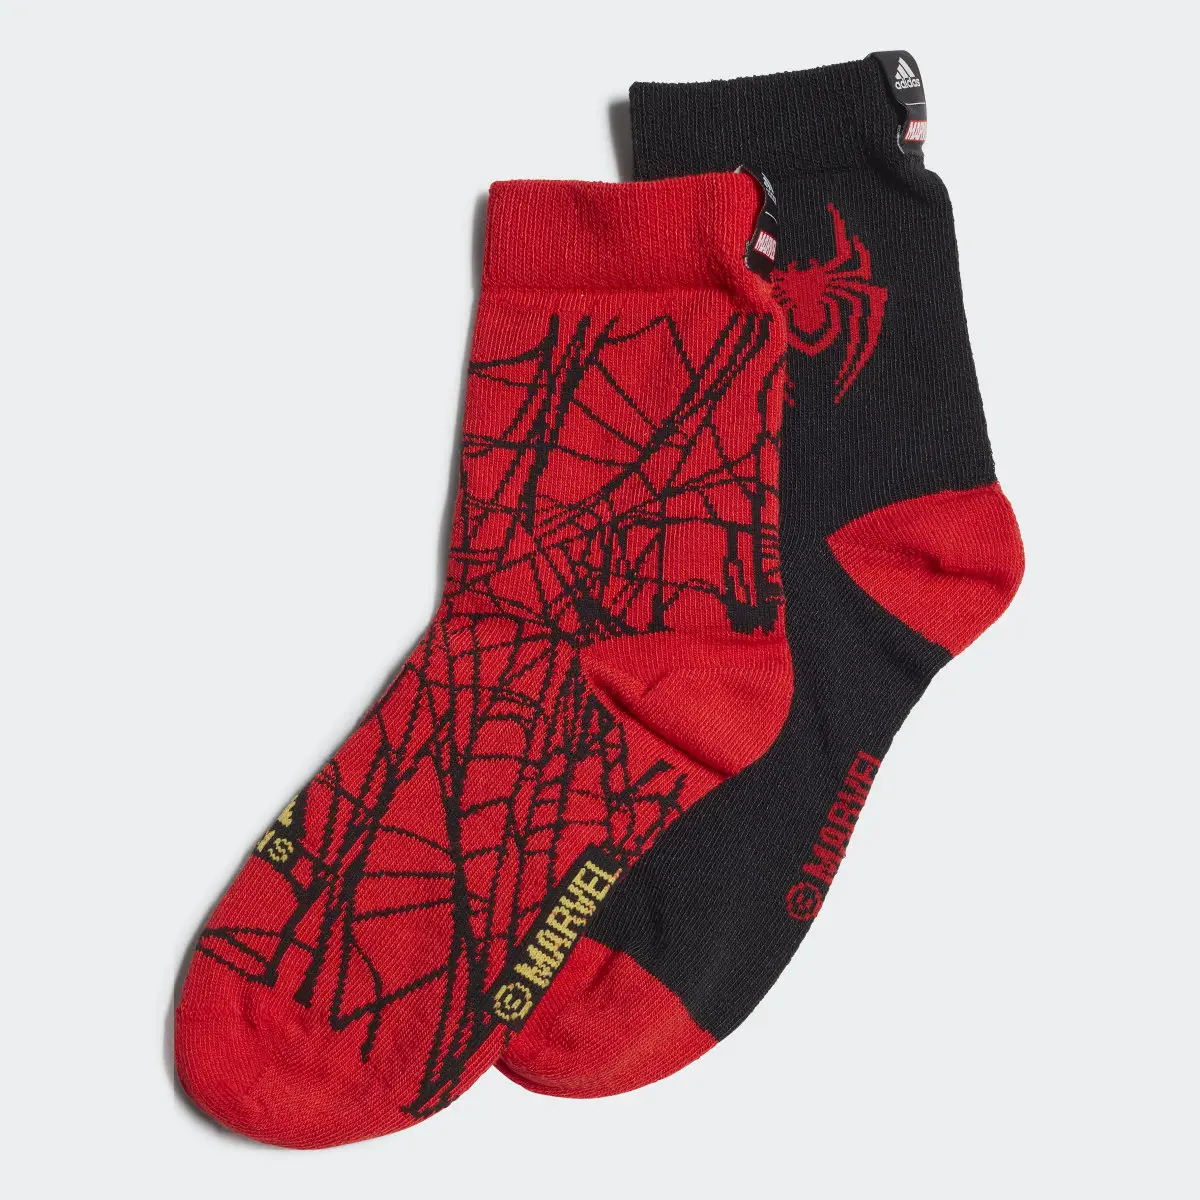 Adidas x Marvel's Miles Morales Socks 2 Pairs. 2